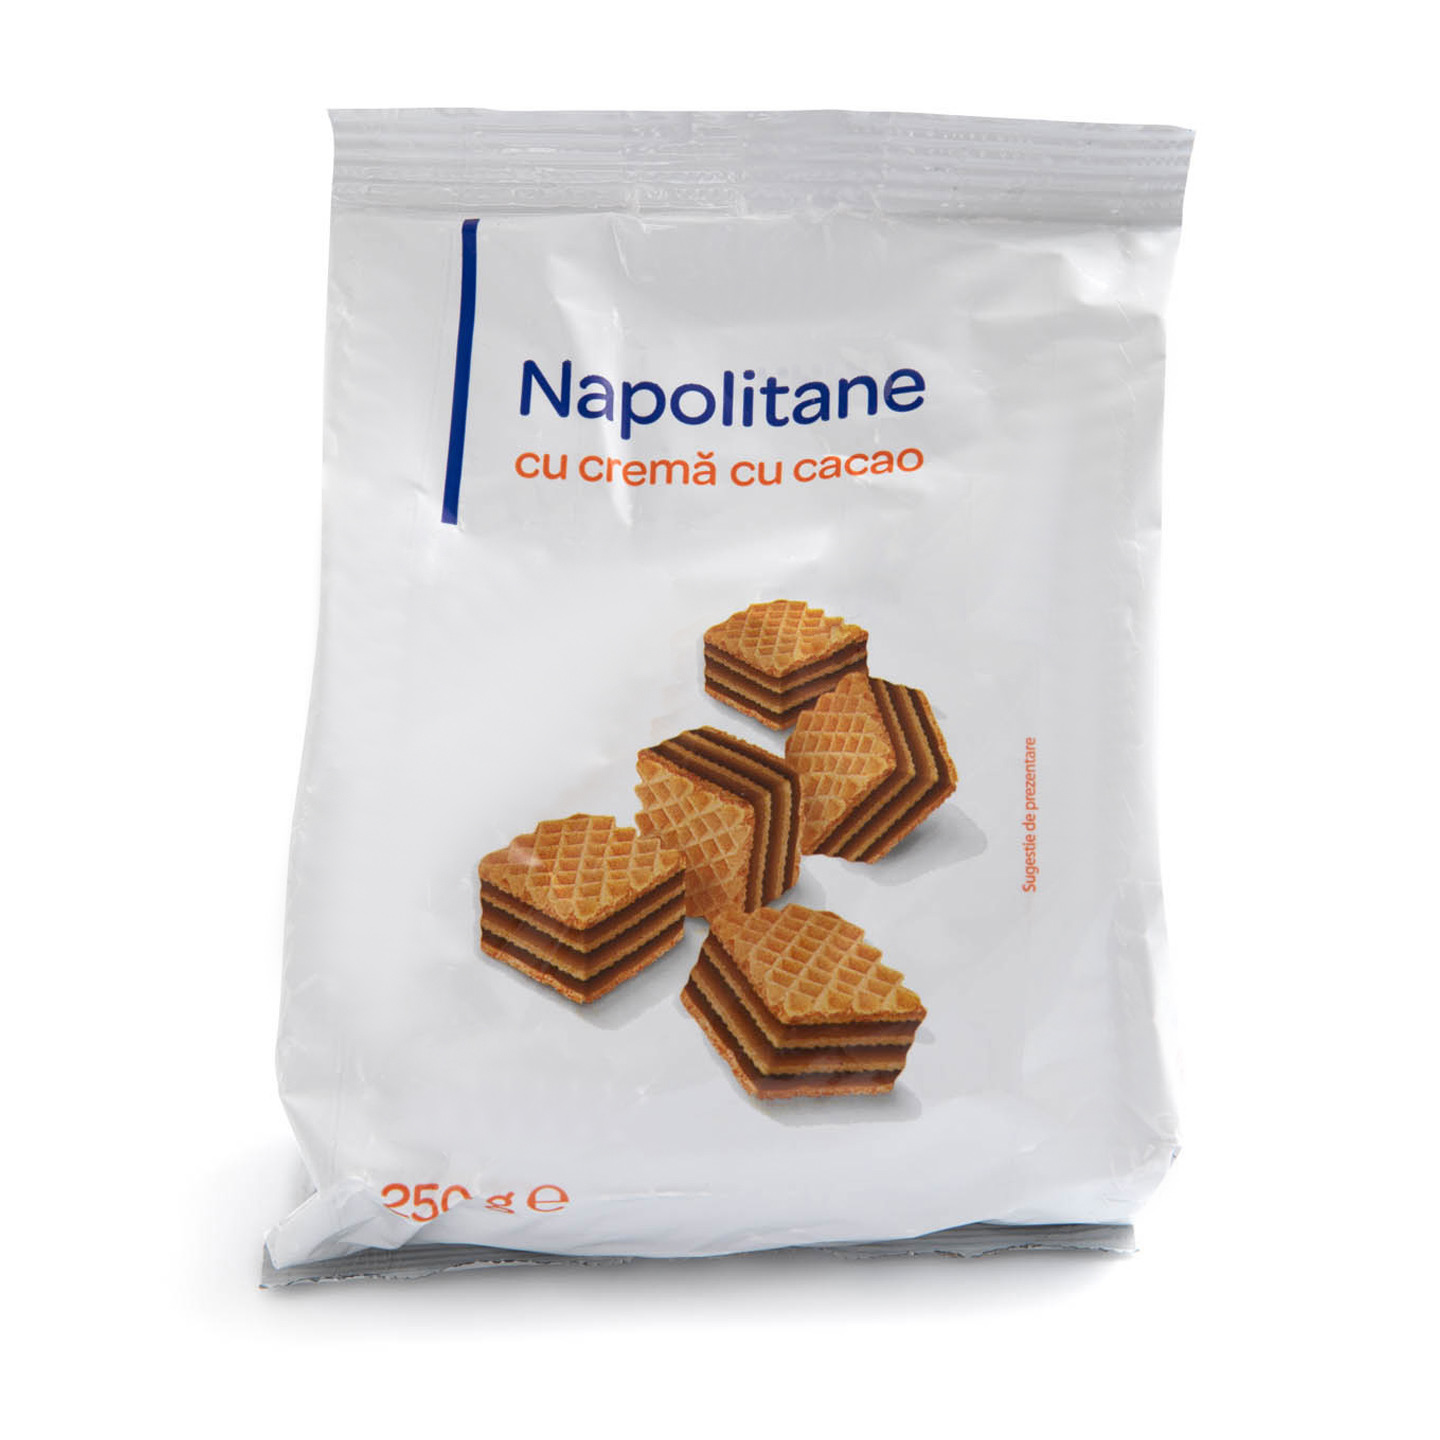 Napolitane cu cremă de cacao Carrefour 250g